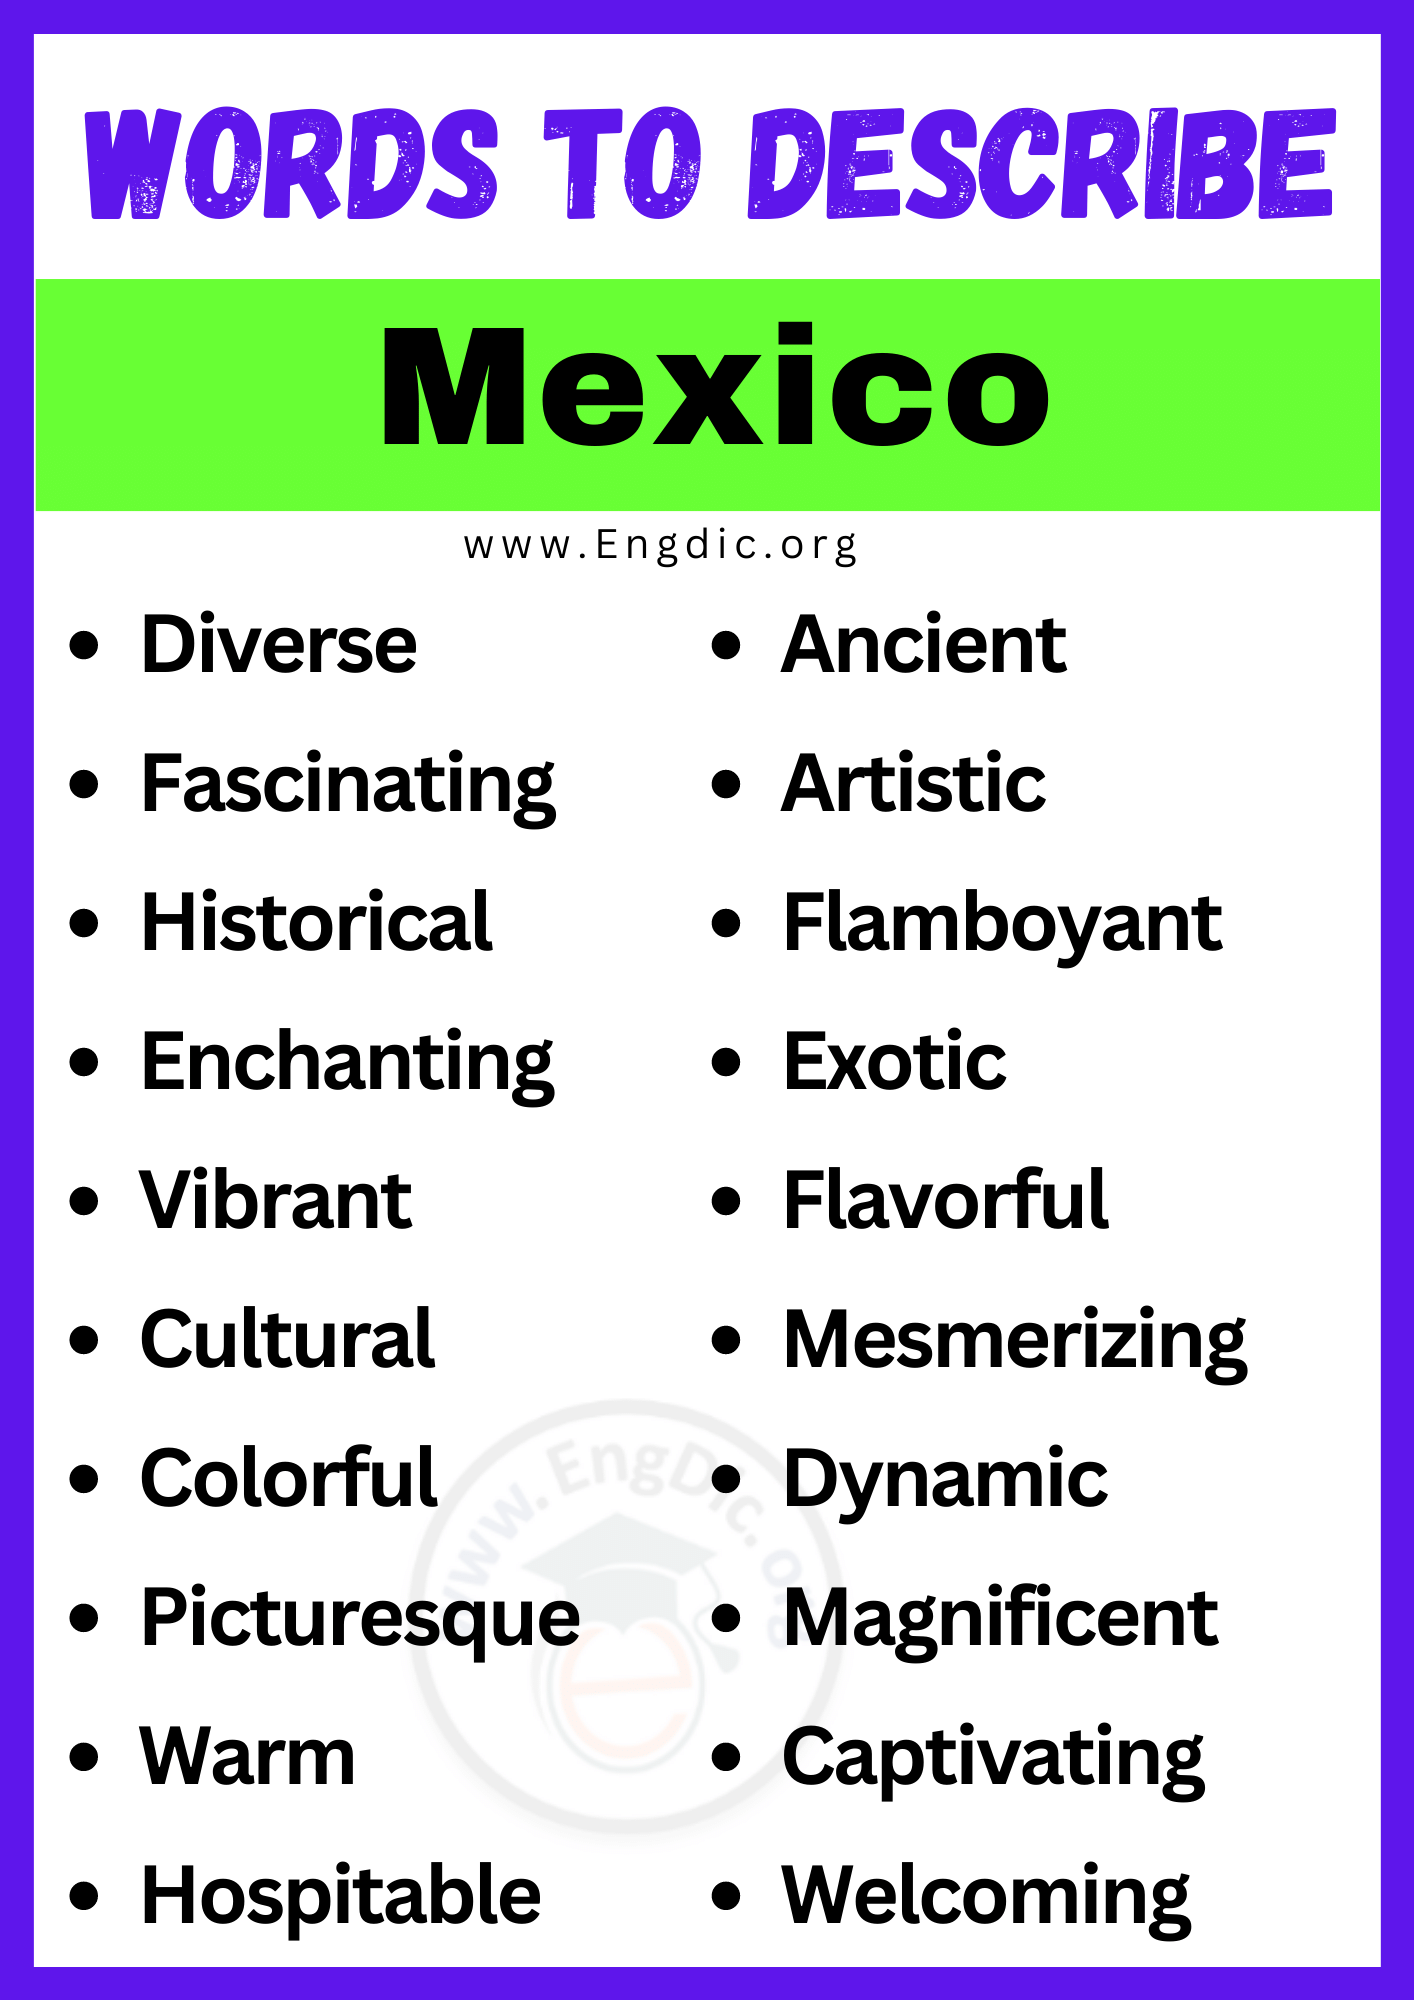 Words to Describe Mexico